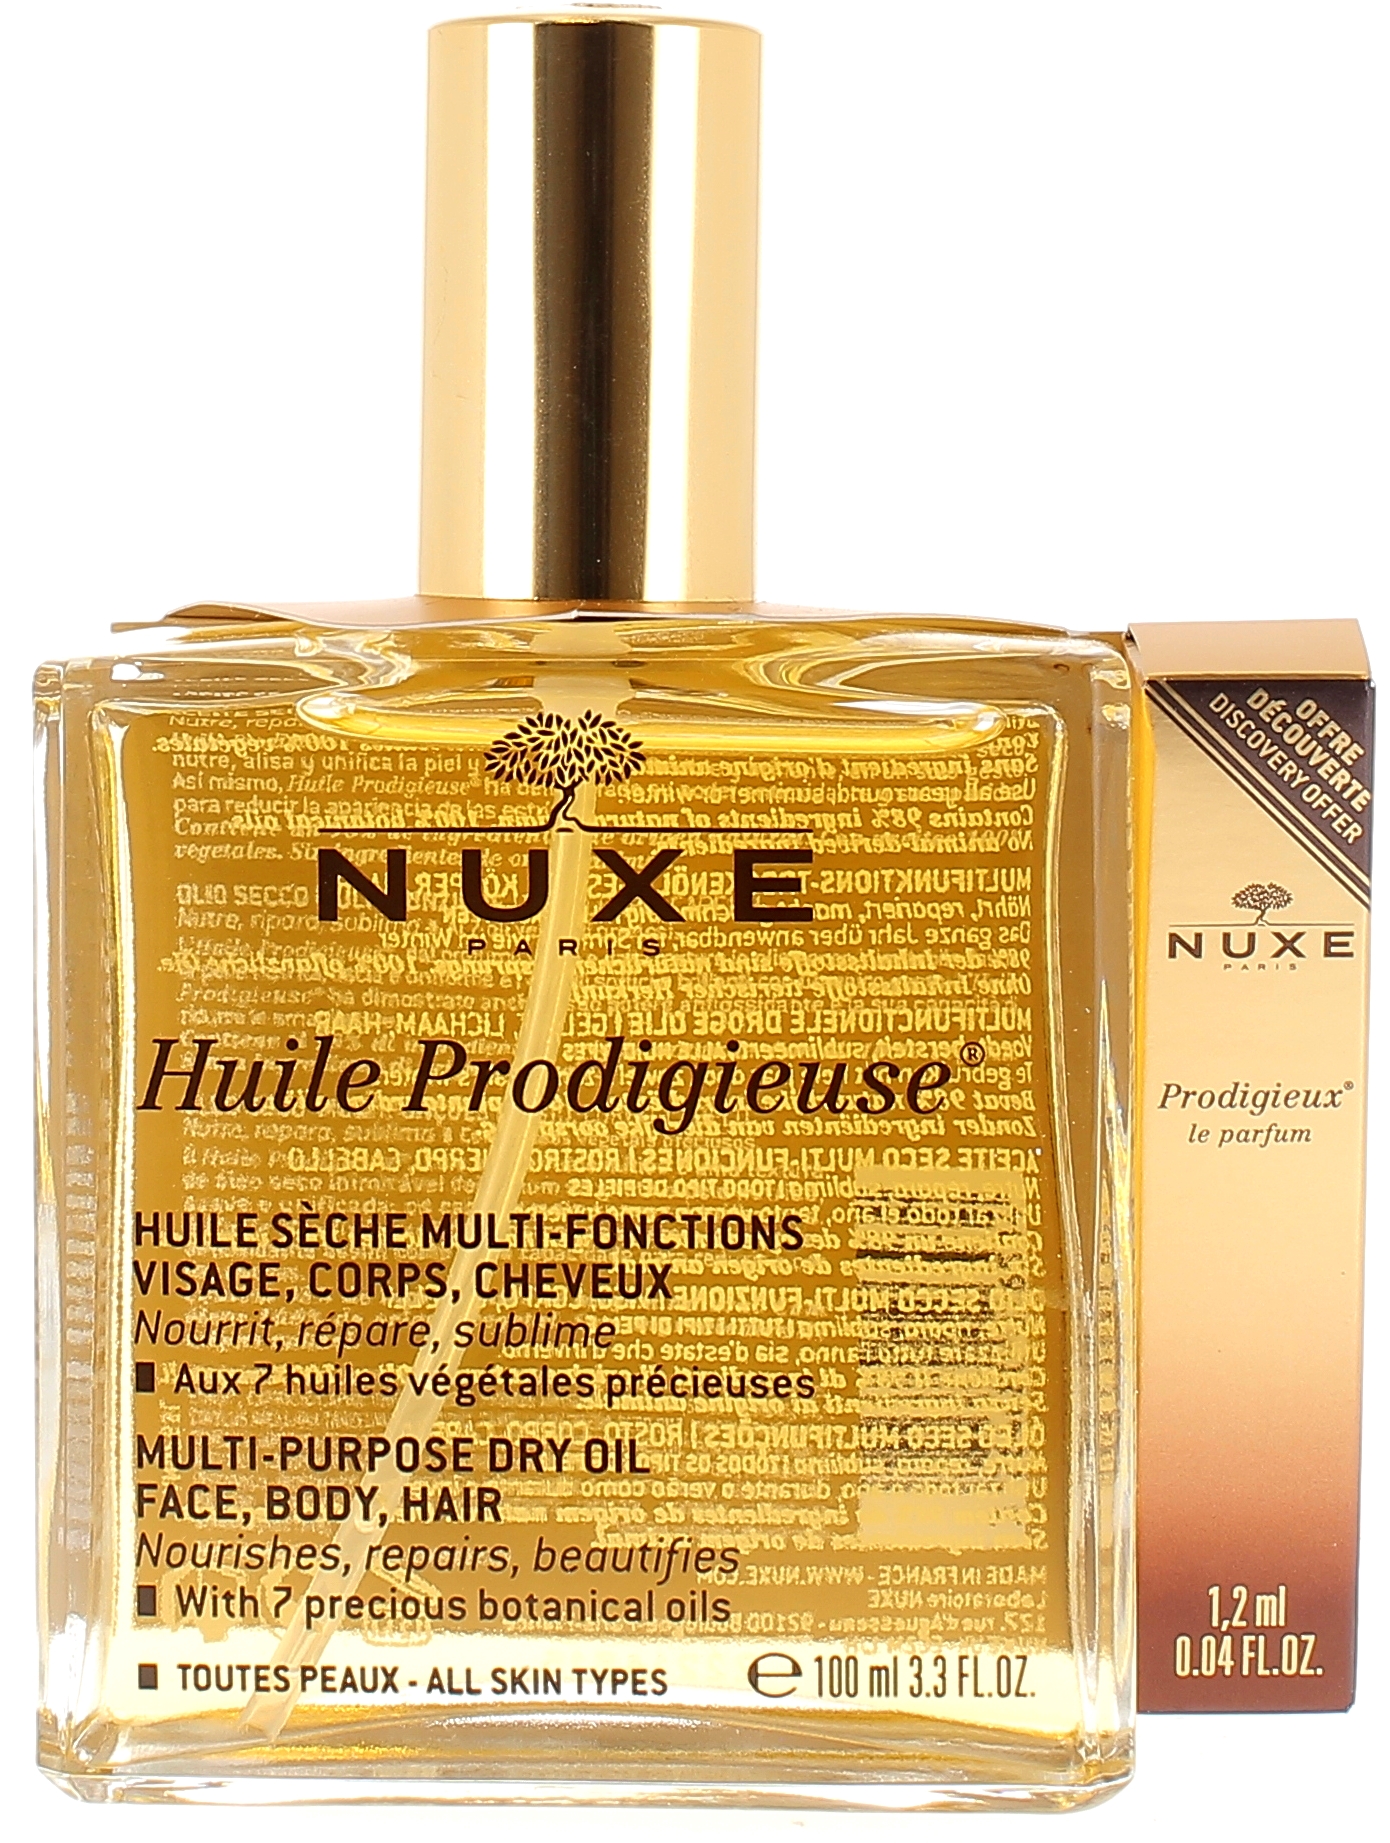 Huile prodigieuse + prodigieux le parfum Nuxe - flacon de 100 ml + parfum de 1,2 ml